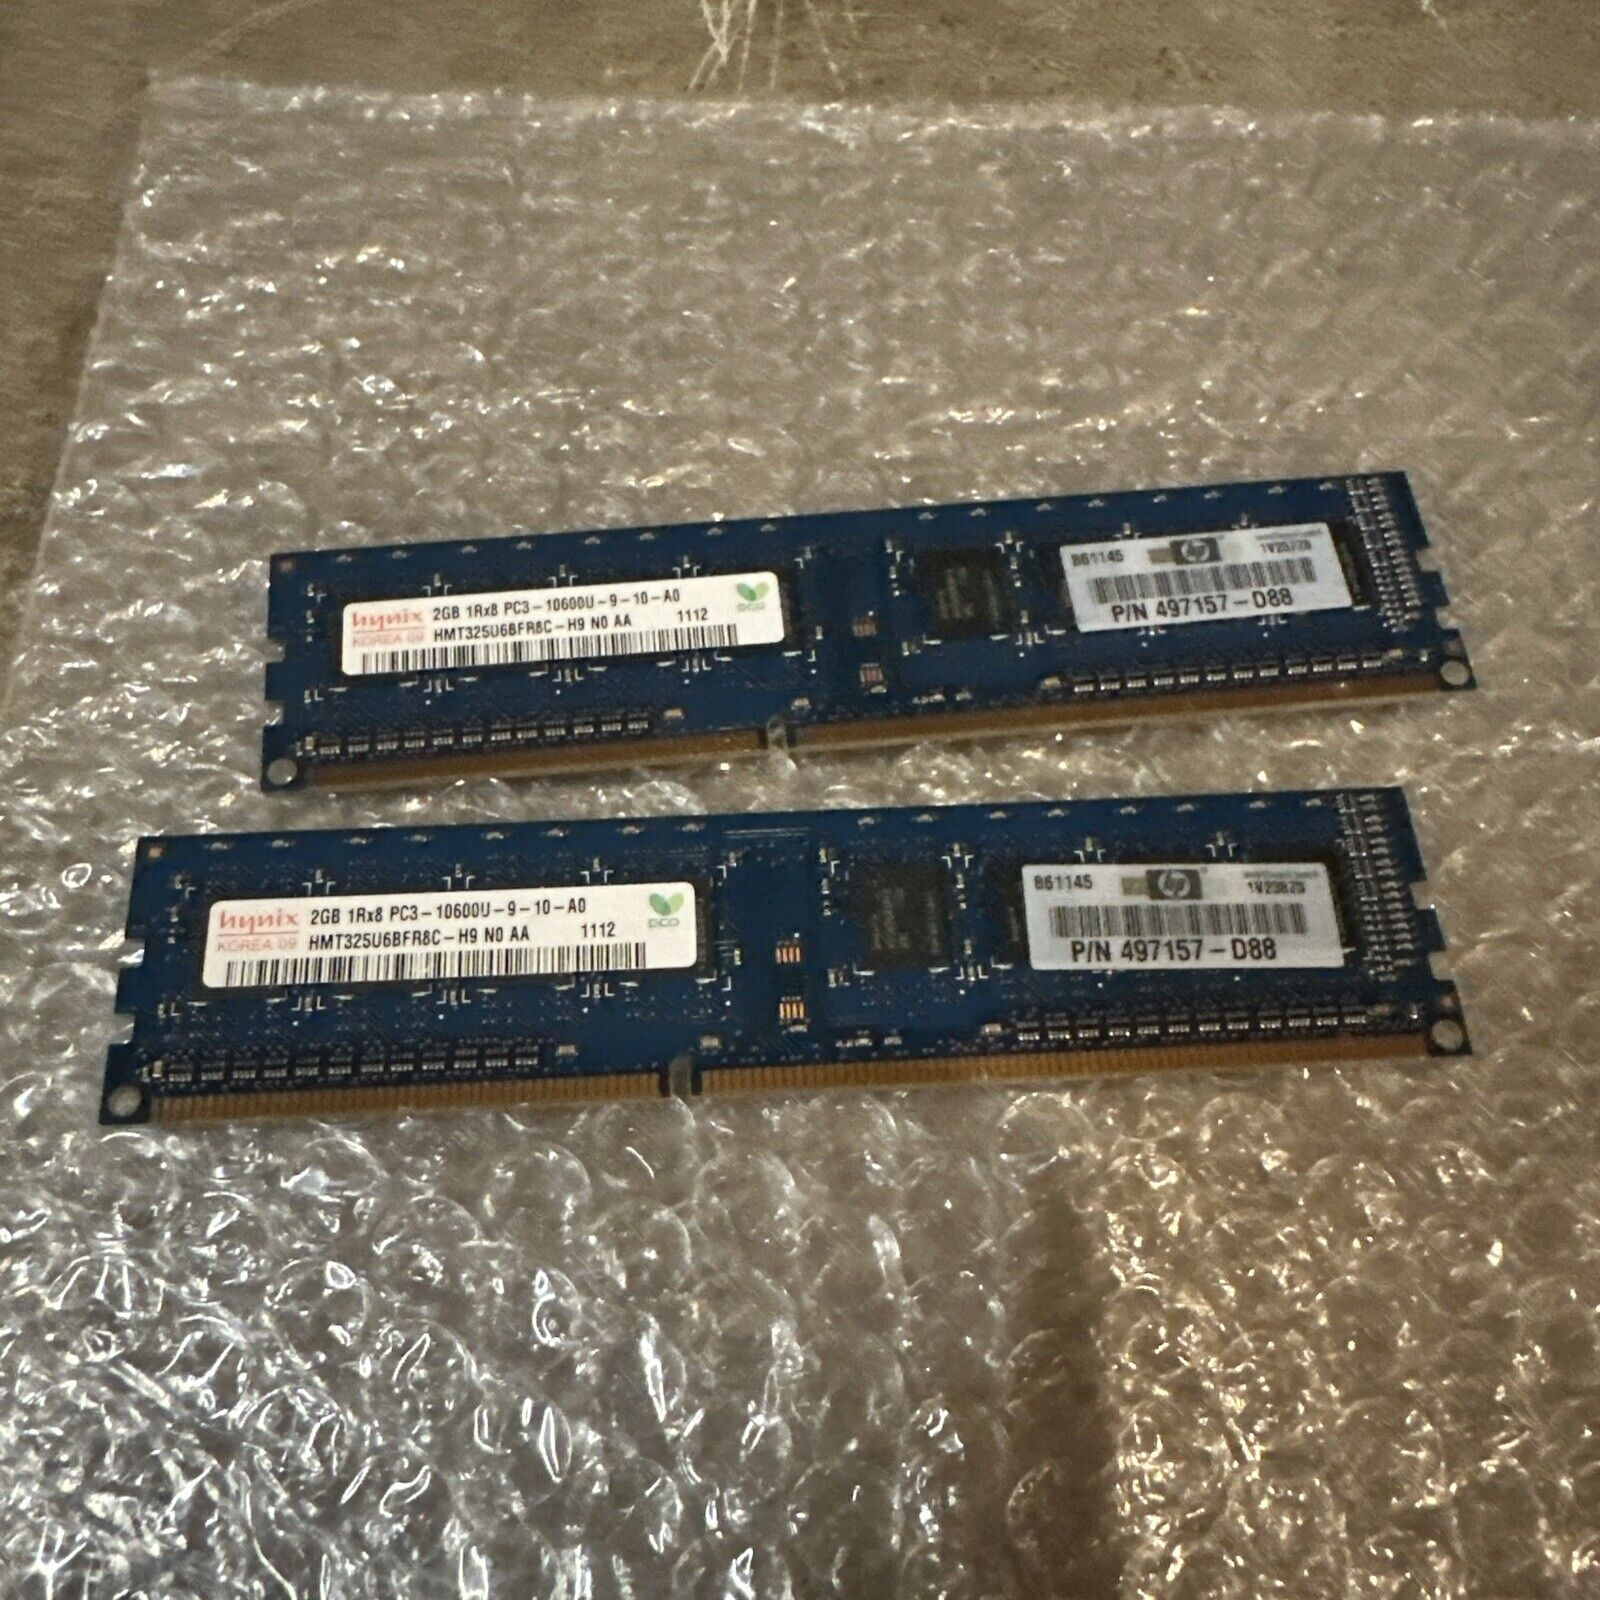 Lot Of 2 Hynix 2GB 1RX8 PC3-10600U-9-10 A0 HMT325U6Cbfr8c -H9 NO AA